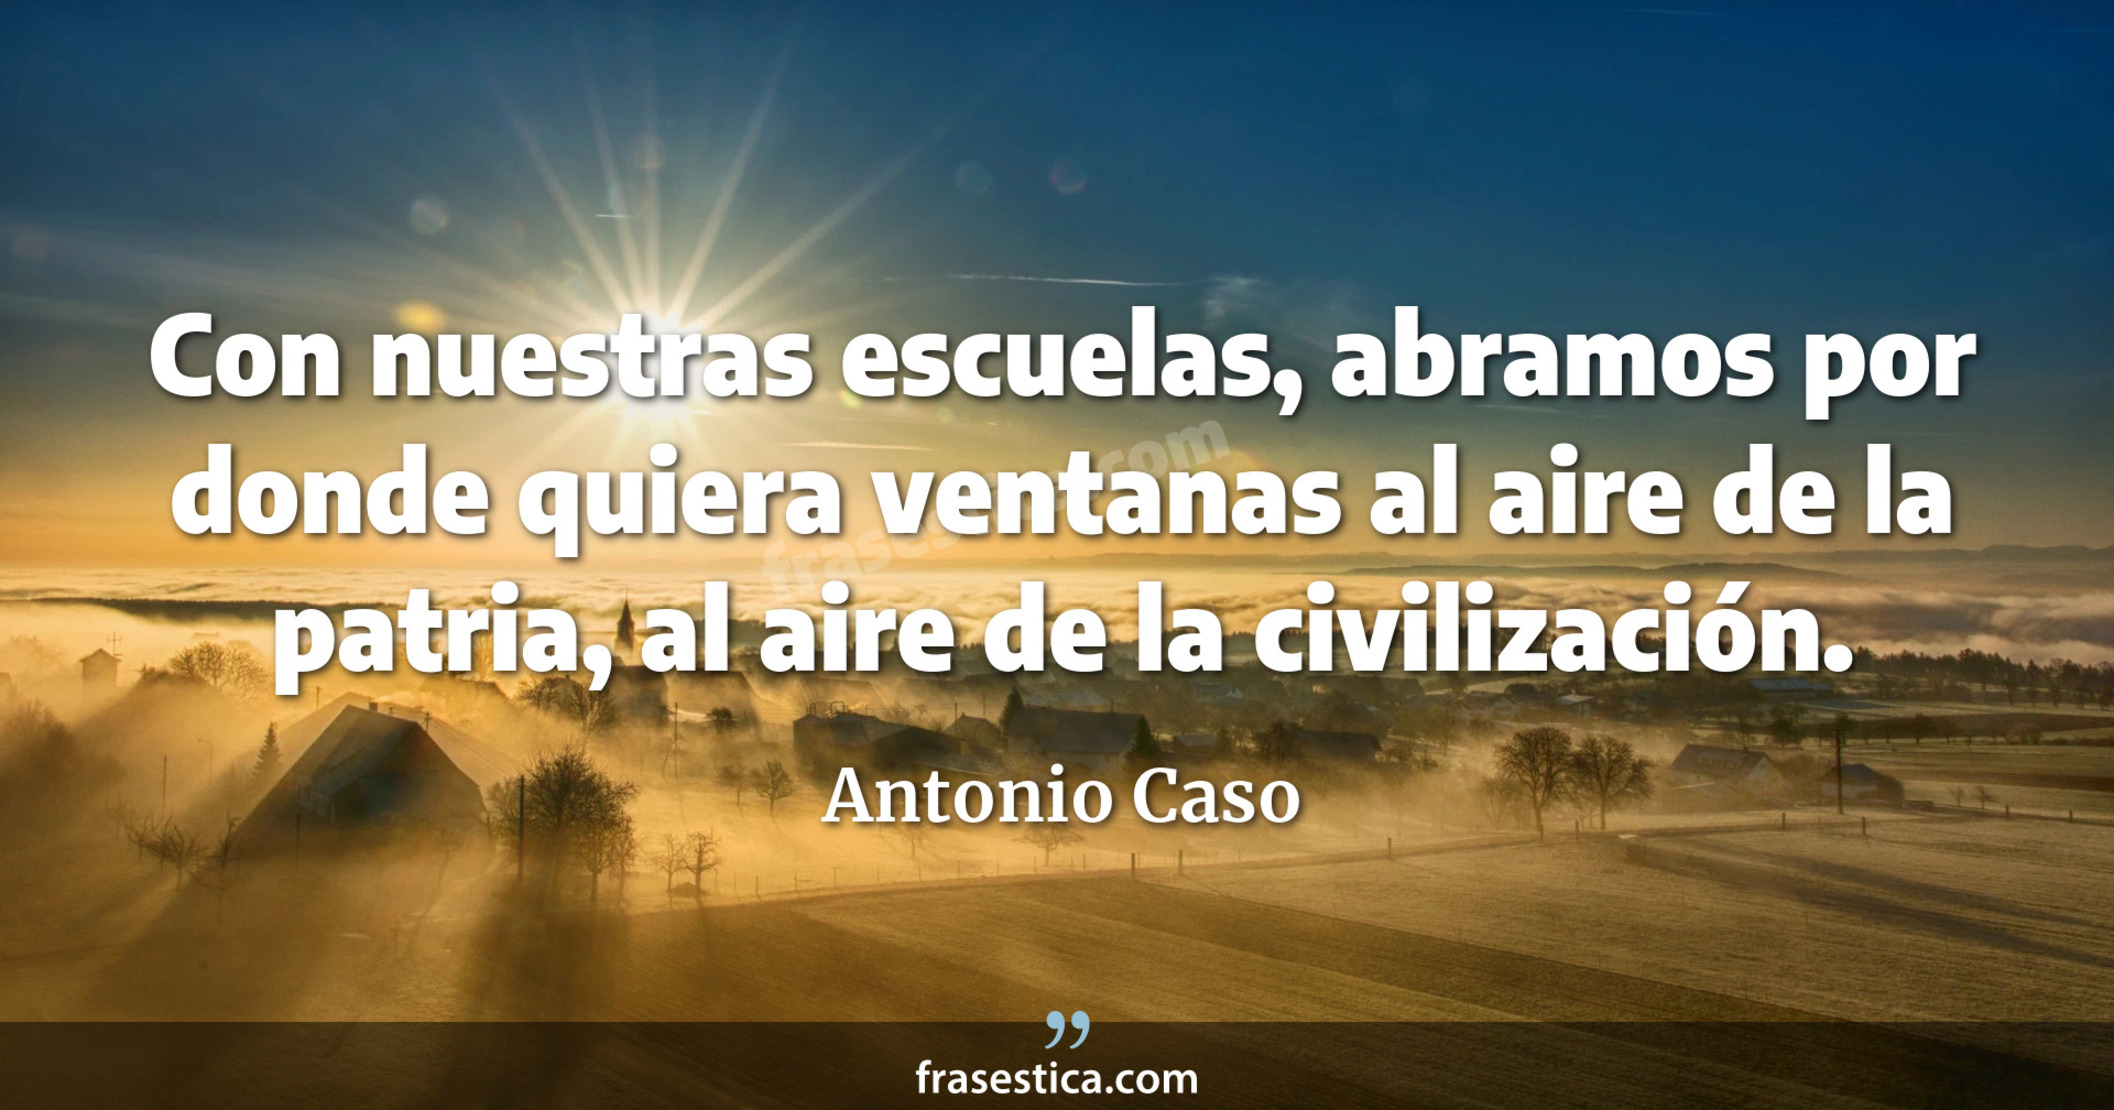 Con nuestras escuelas, abramos por donde quiera ventanas al aire de la patria, al aire de la civilización. - Antonio Caso